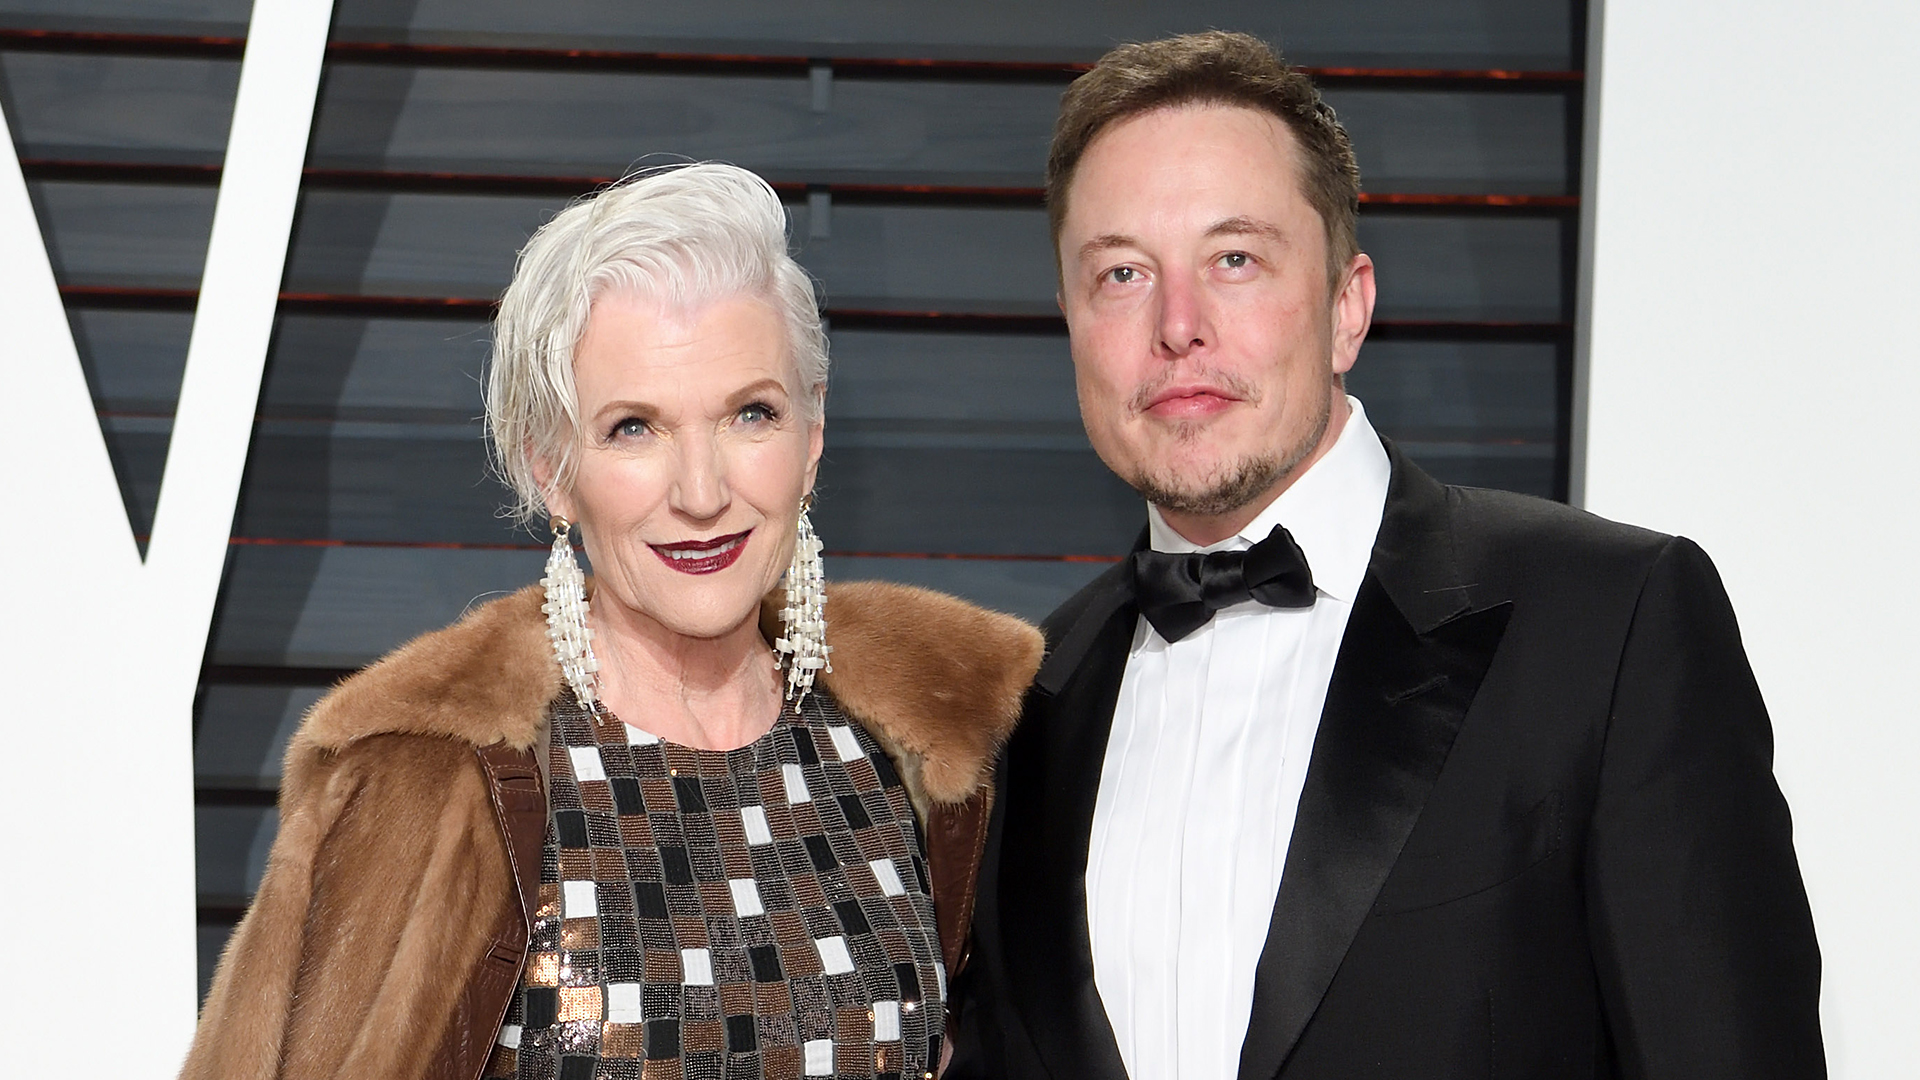 Maye y Elon Musk durante un evento en 2017 (Karwai Tang/Getty Images)